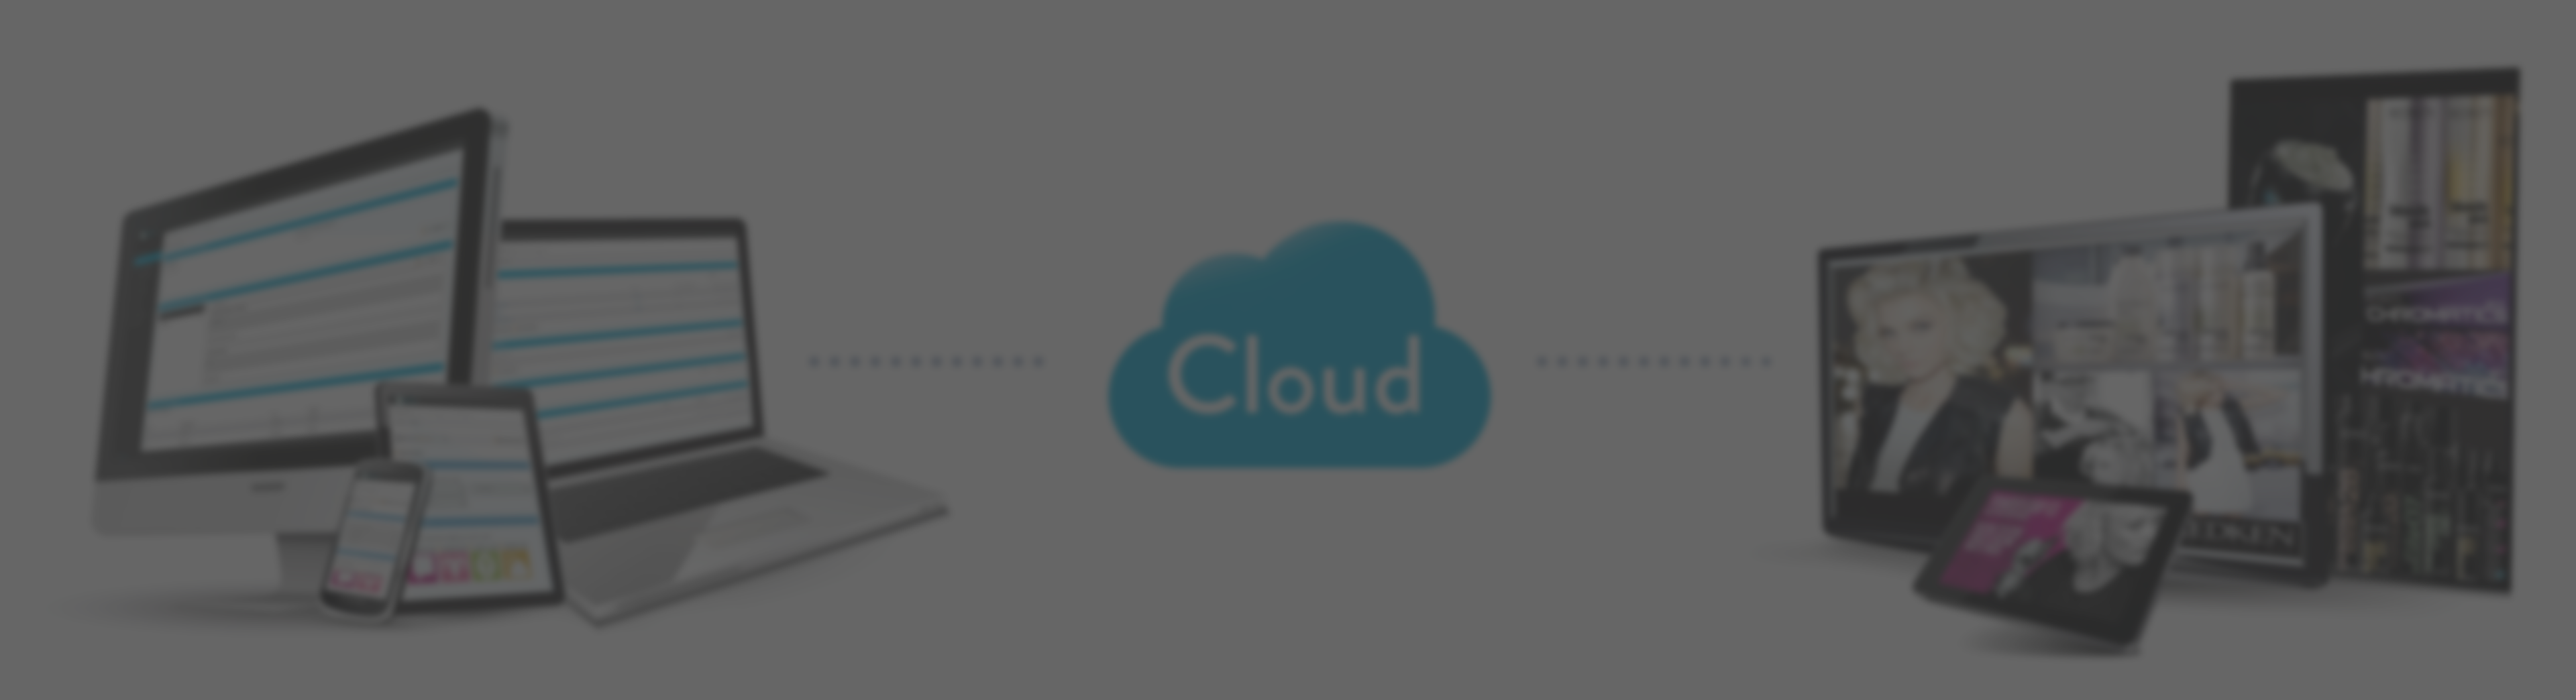 cloud-based digital signage, cloud-based digital signage software